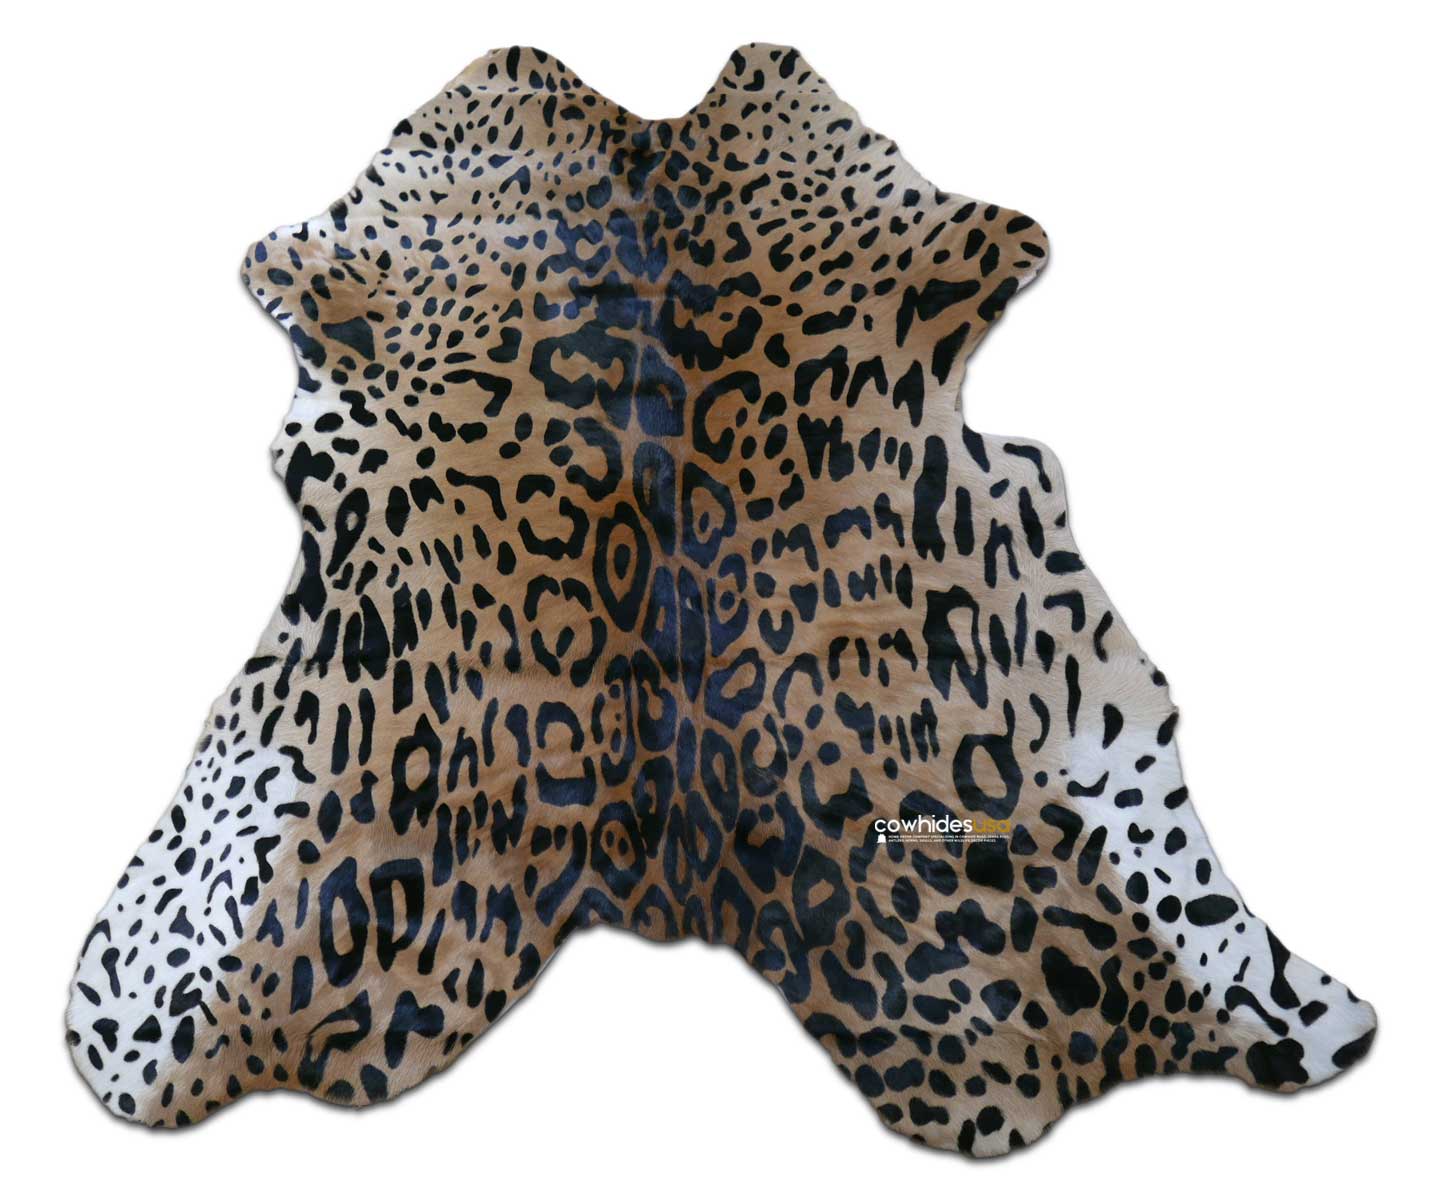 Jaguar Print Calfskin Size: Around 35" X 30" Jaguar Print Calf Skin Mini Cowhide Rug